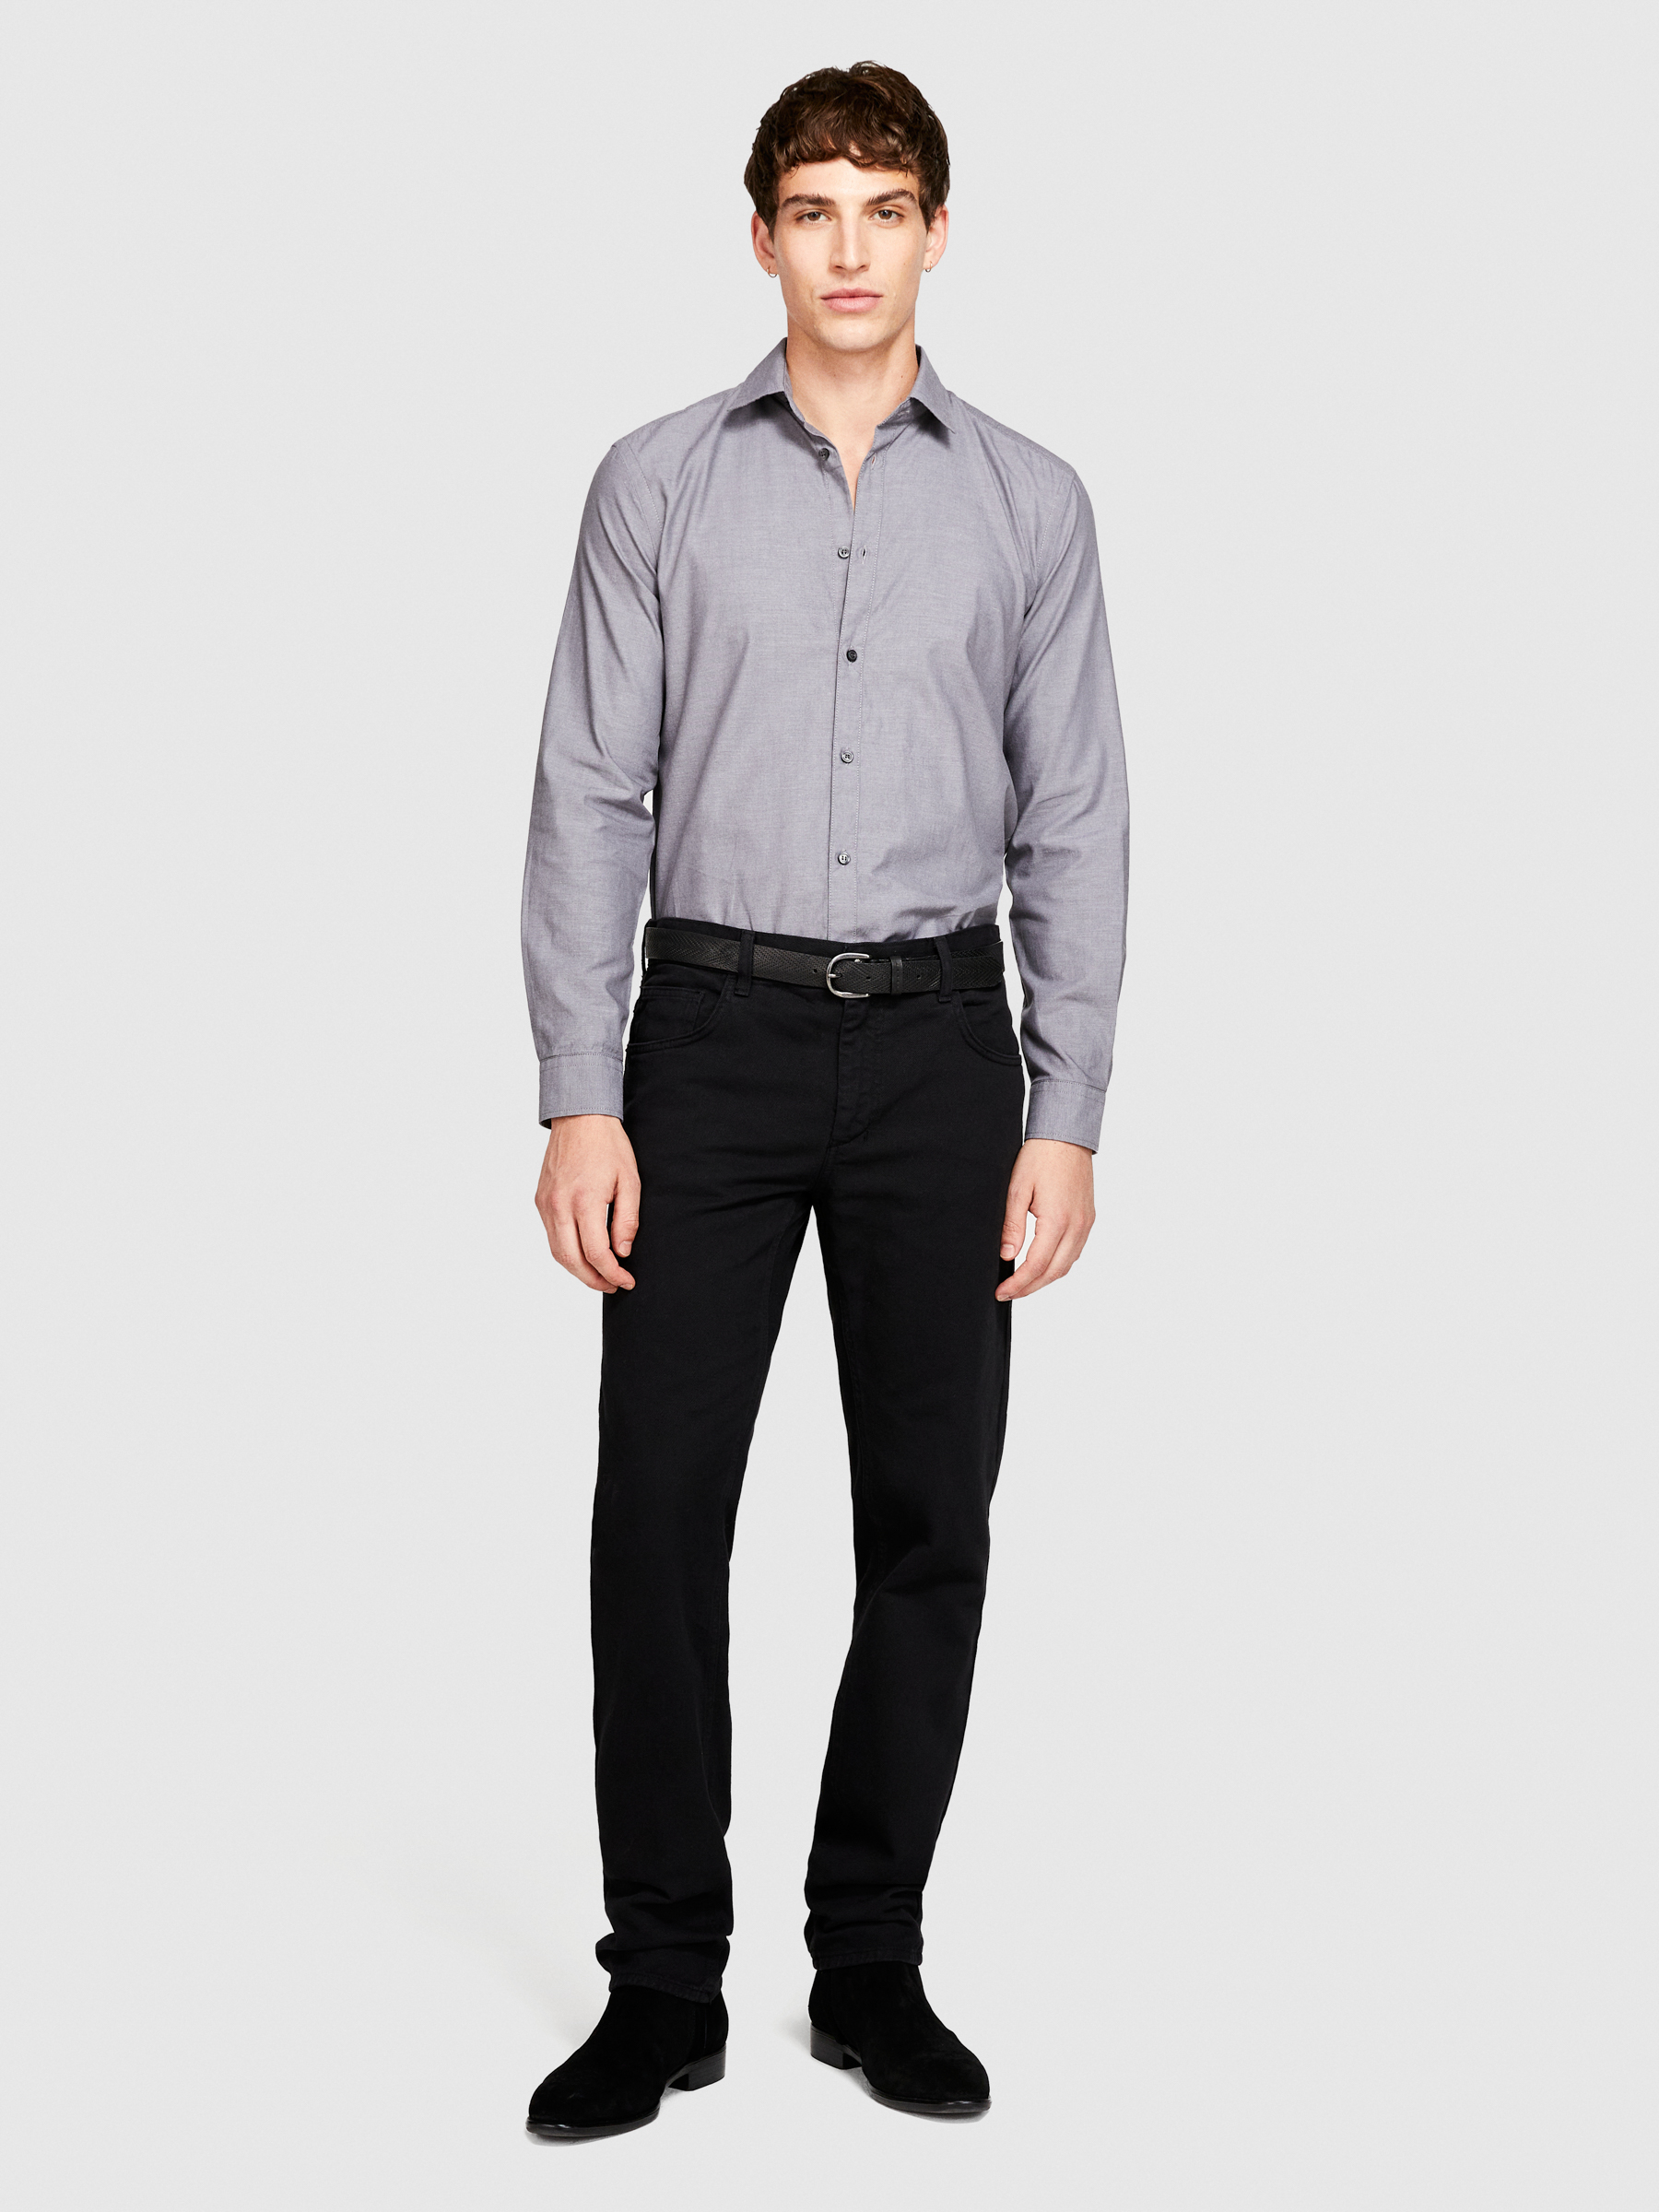 Sisley - 100% Cotton Shirt, Man, Gray, Size: 44